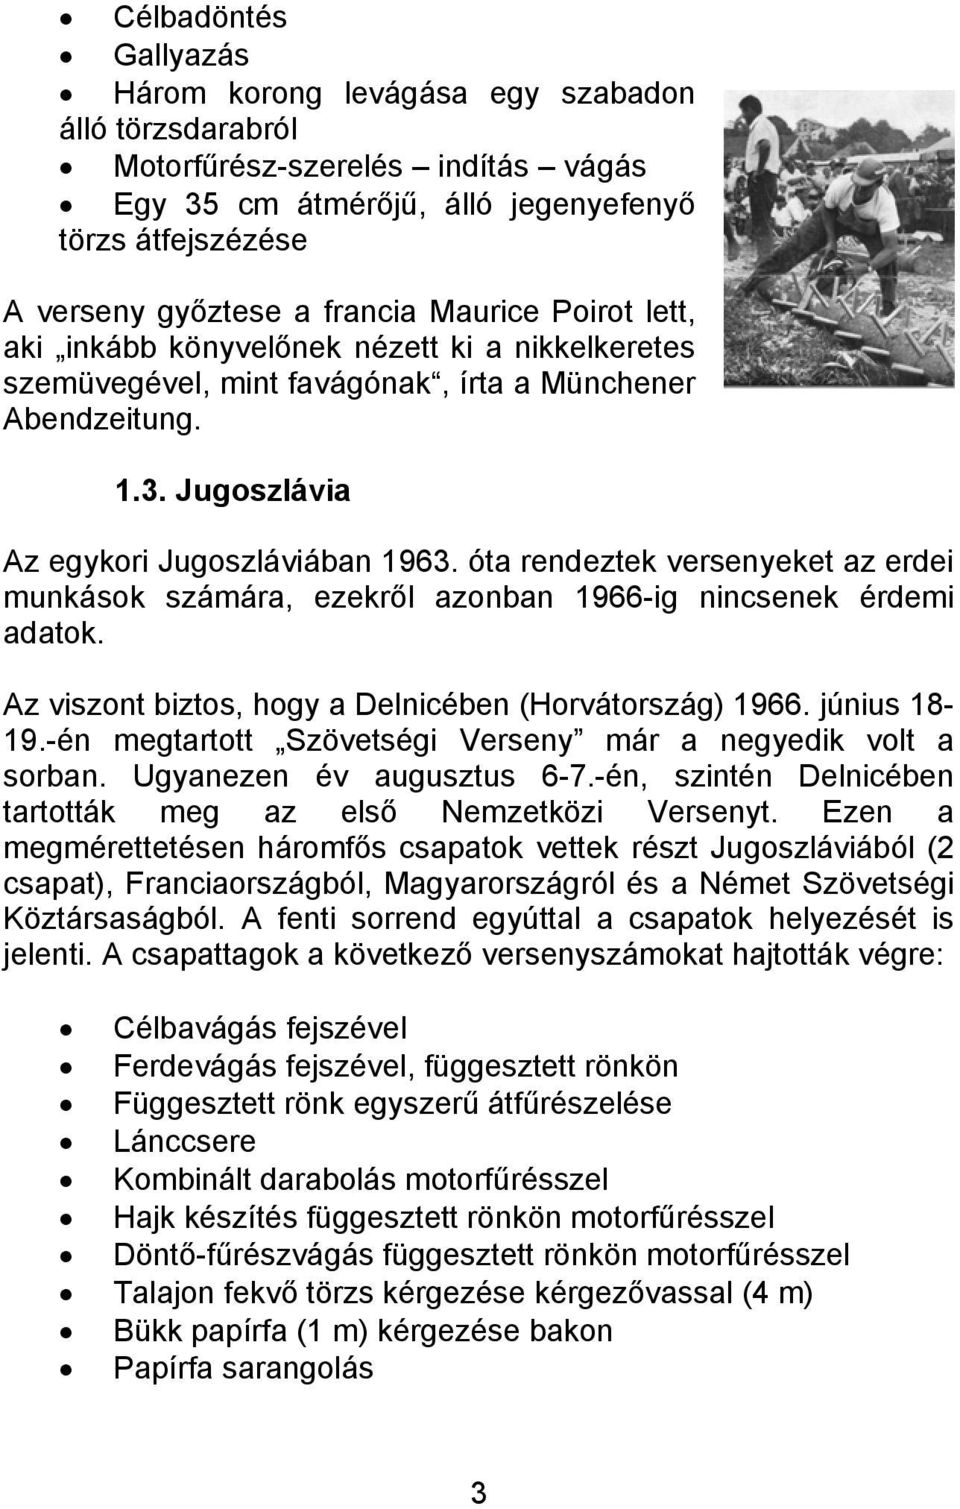 óta rendeztek versenyeket az erdei munkások számára, ezekről azonban 1966-ig nincsenek érdemi adatok. Az viszont biztos, hogy a Delnicében (Horvátország) 1966. június 18-19.